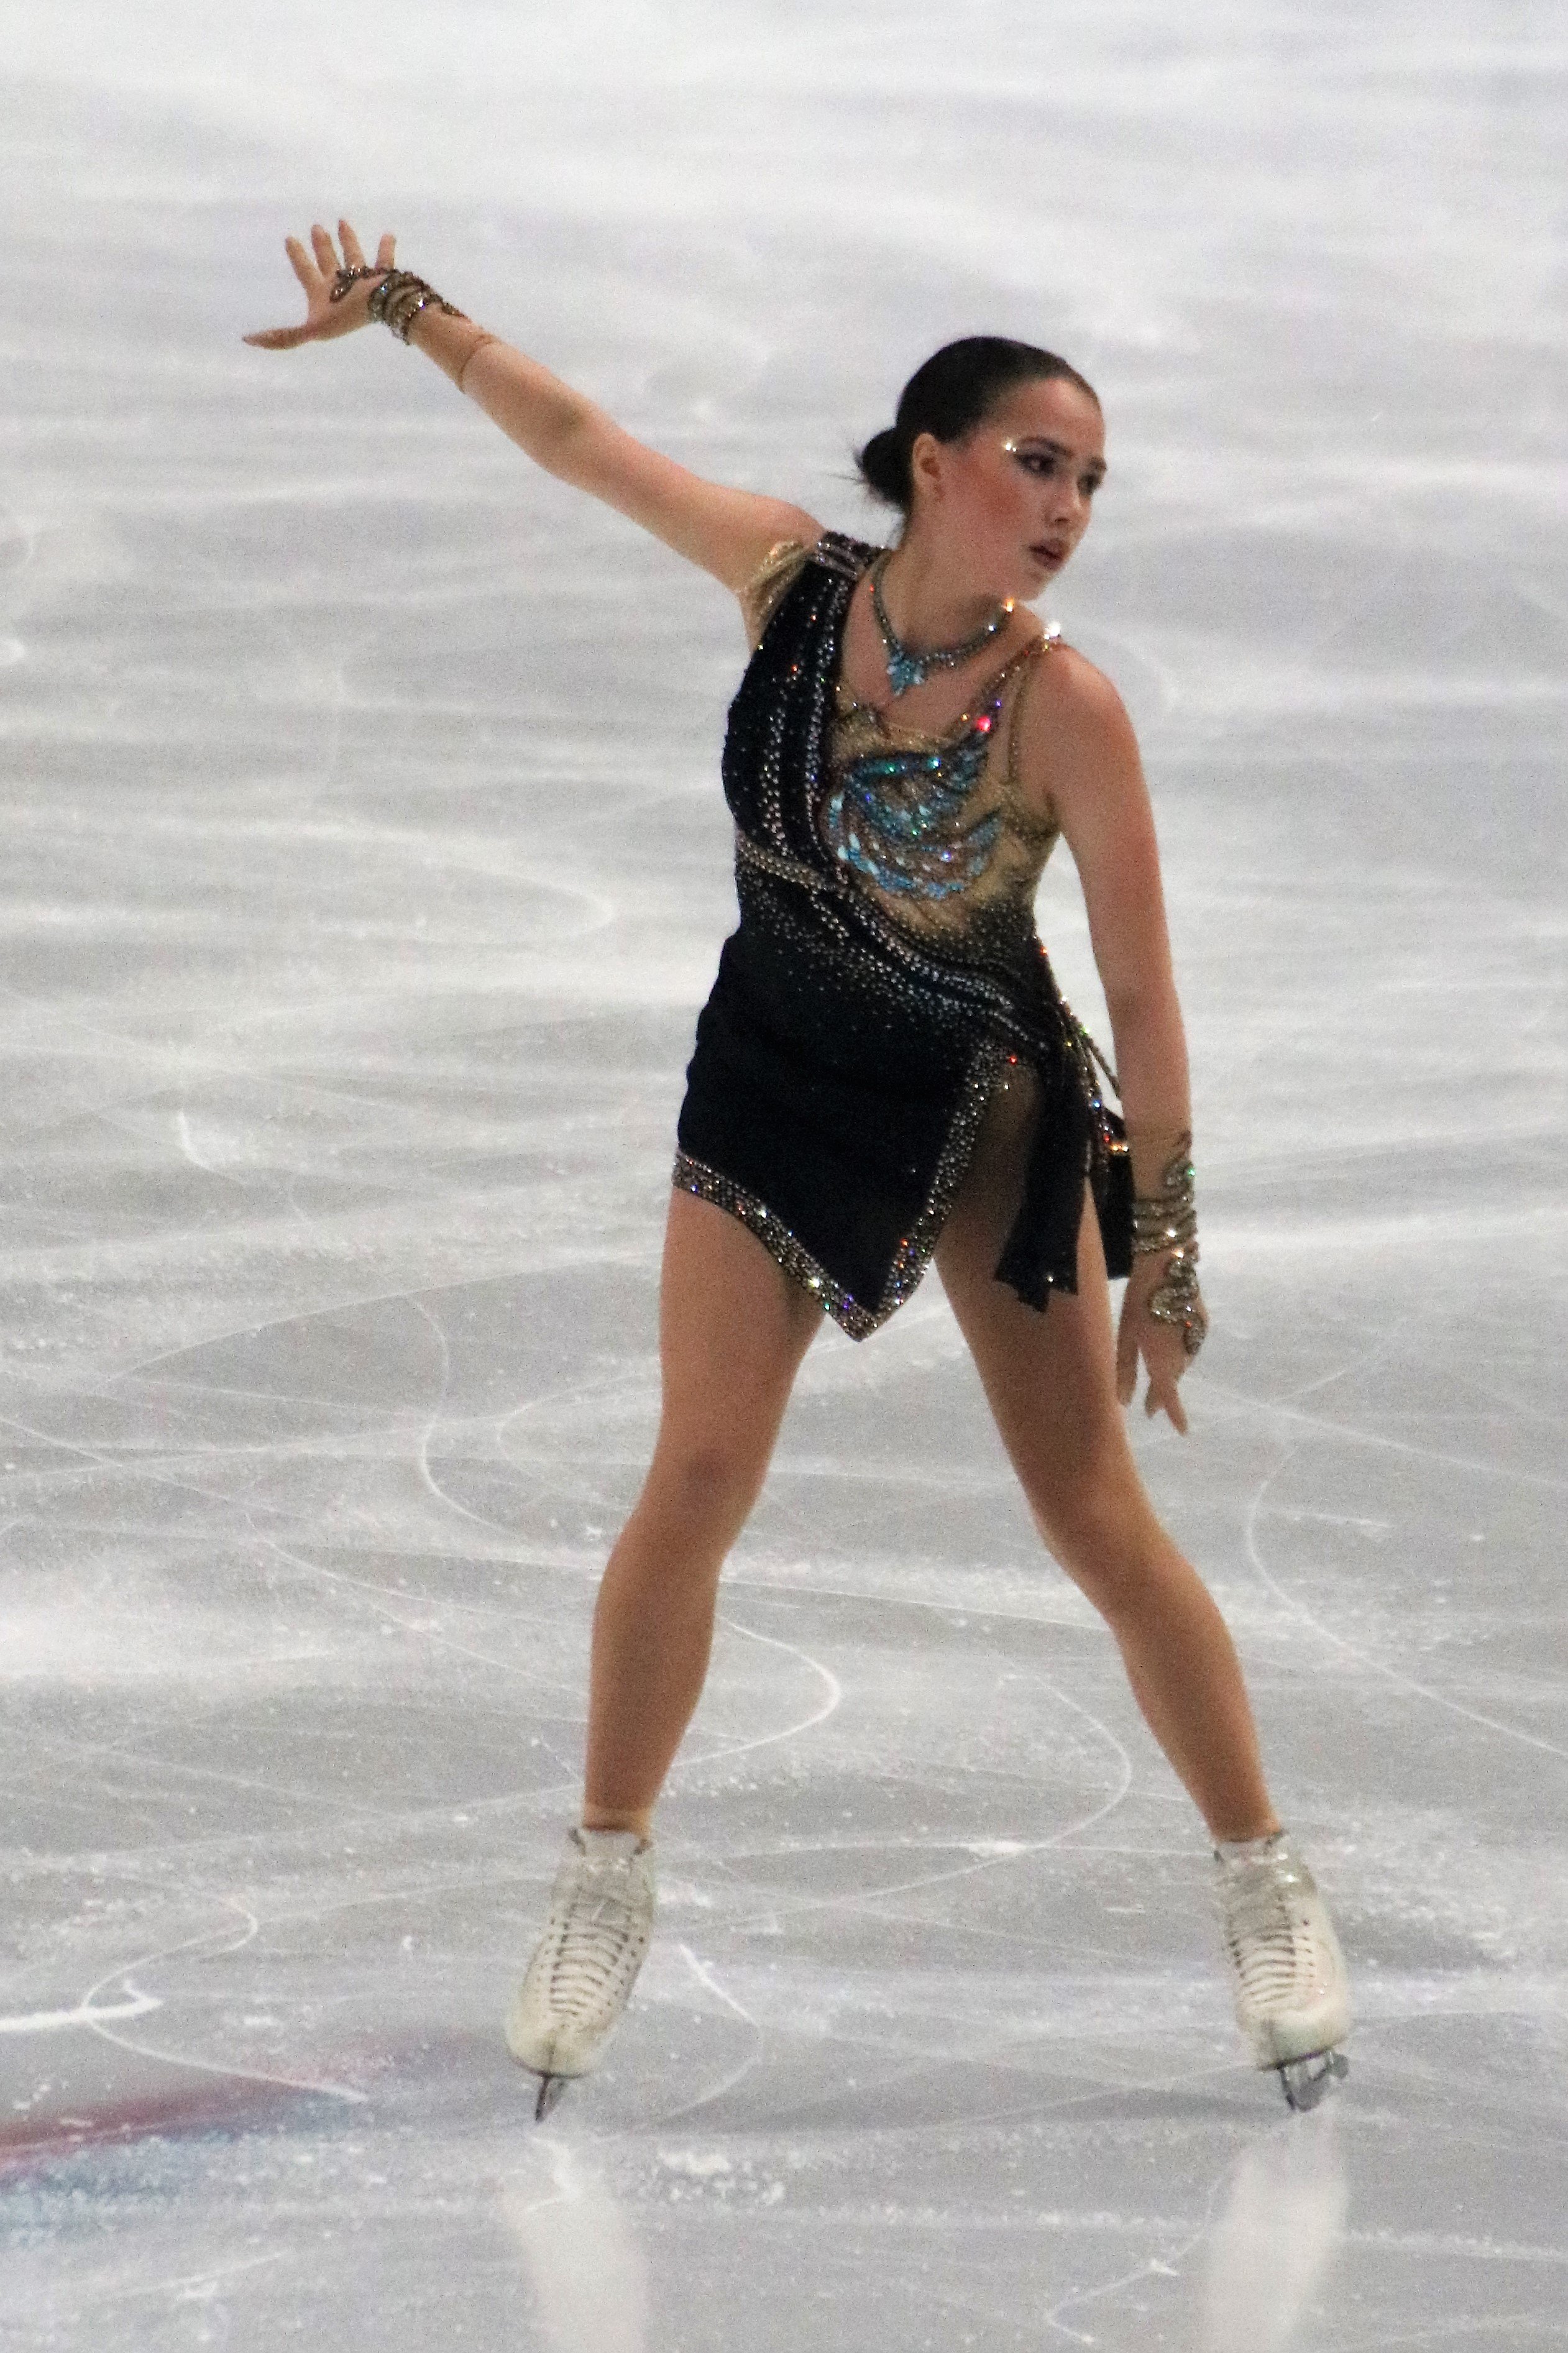 Олимпийская чемпионка из Удмуртии Алина Загитова стала одной из самых упоминаемых спортсменок в СМИ